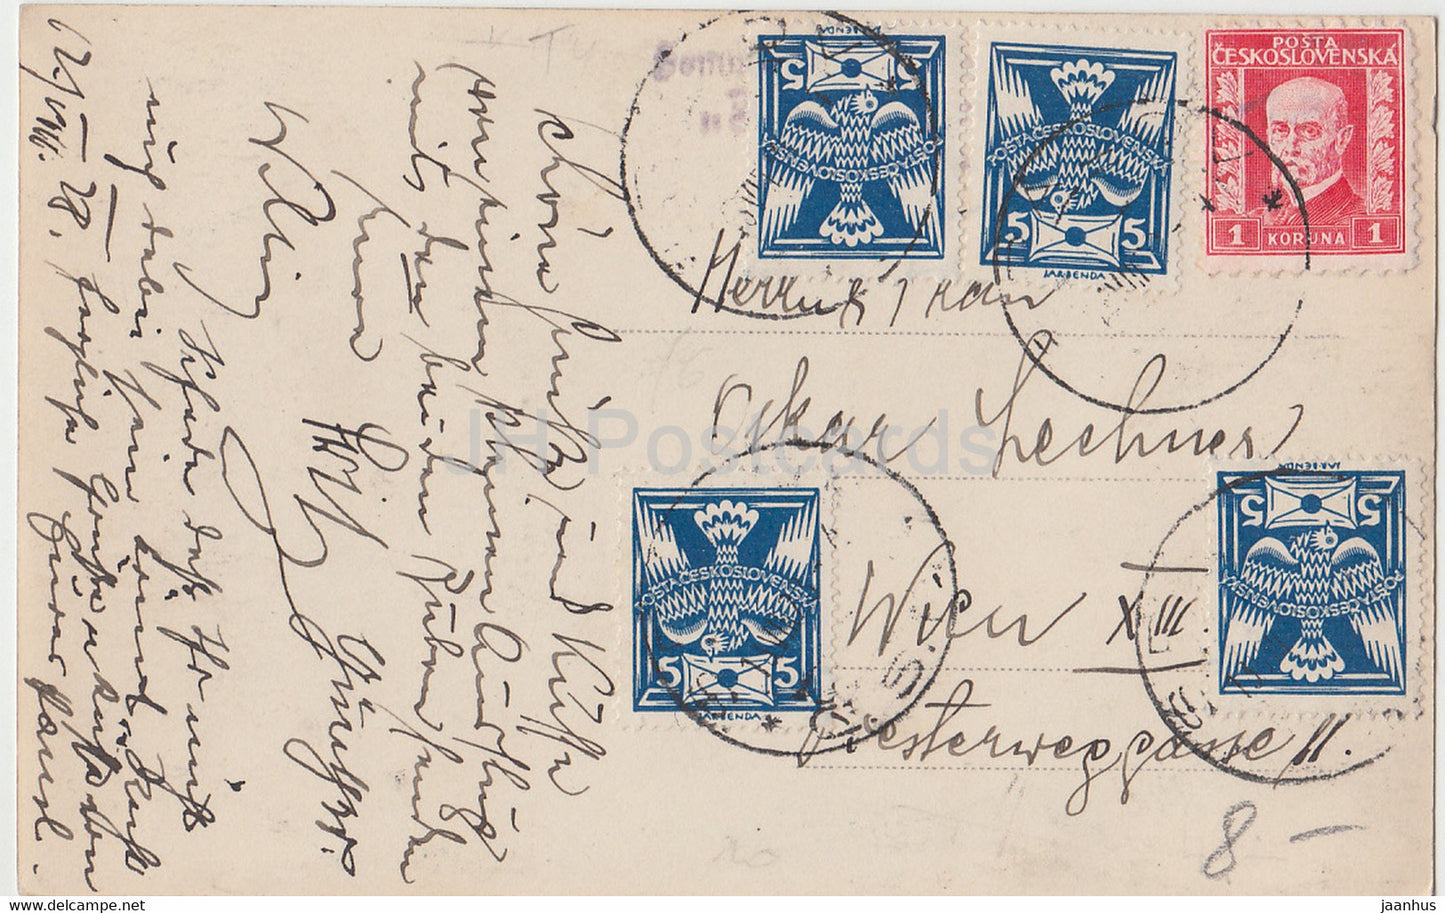 Maria Stein - Elka 58 - alte Postkarte - 1928 - Tschechoslowakei - Tschechische Republik - gebraucht